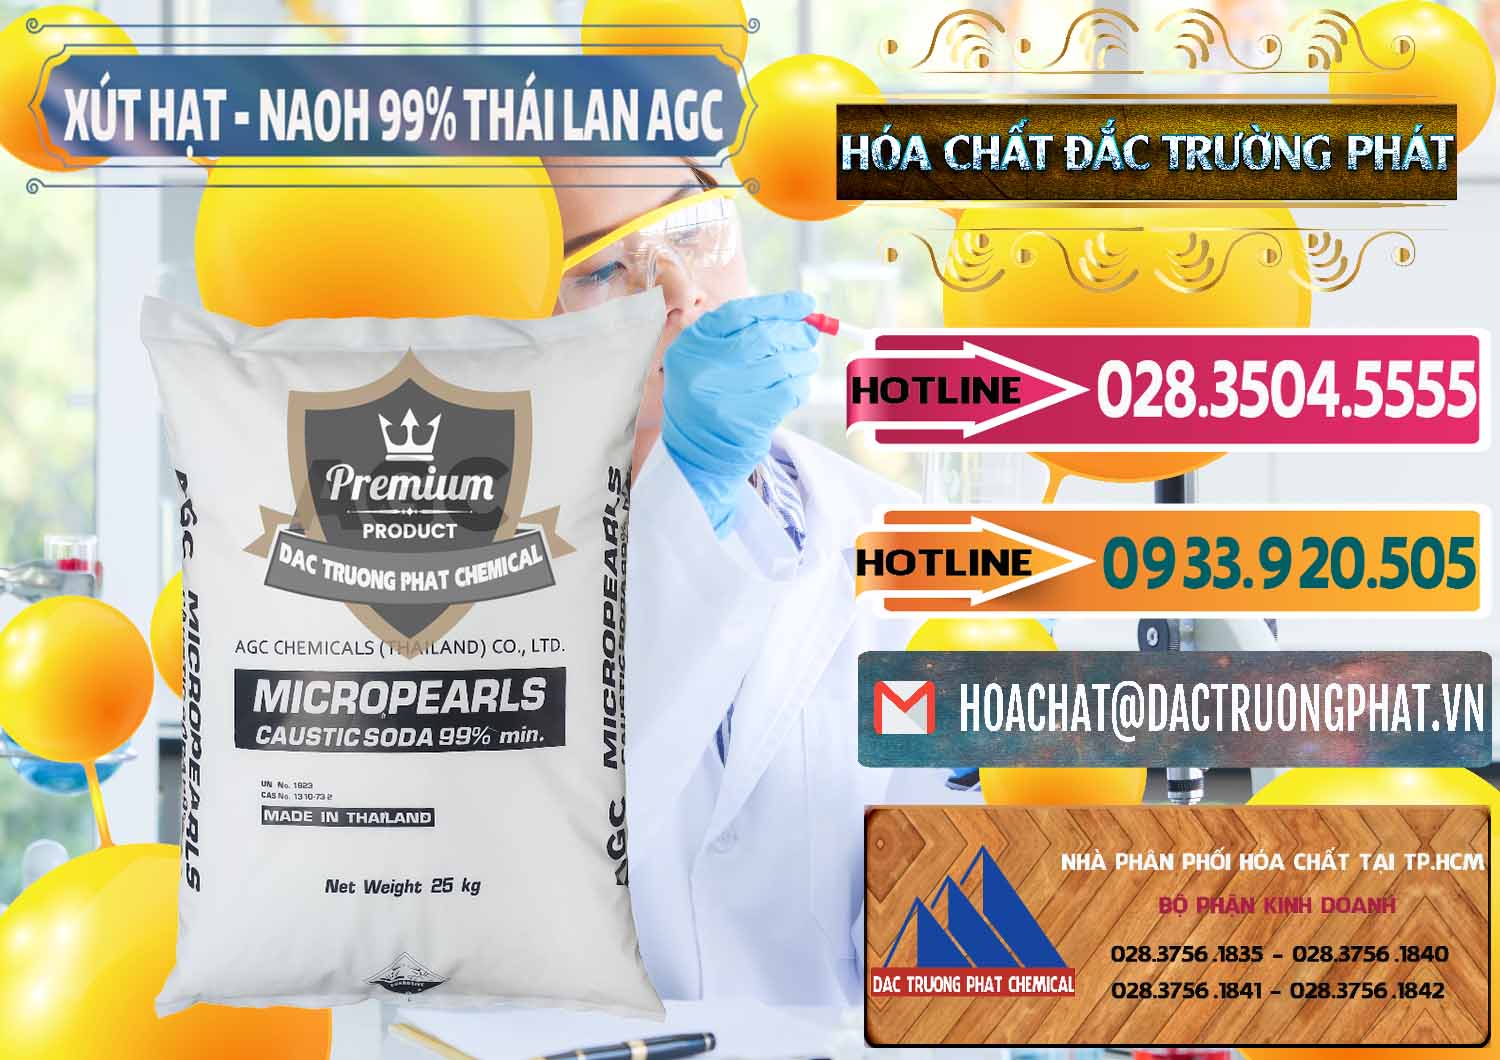 Công ty chuyên cung cấp ( bán ) Xút Hạt - NaOH Bột 99% AGC Thái Lan - 0168 - Công ty chuyên kinh doanh ( phân phối ) hóa chất tại TP.HCM - dactruongphat.vn